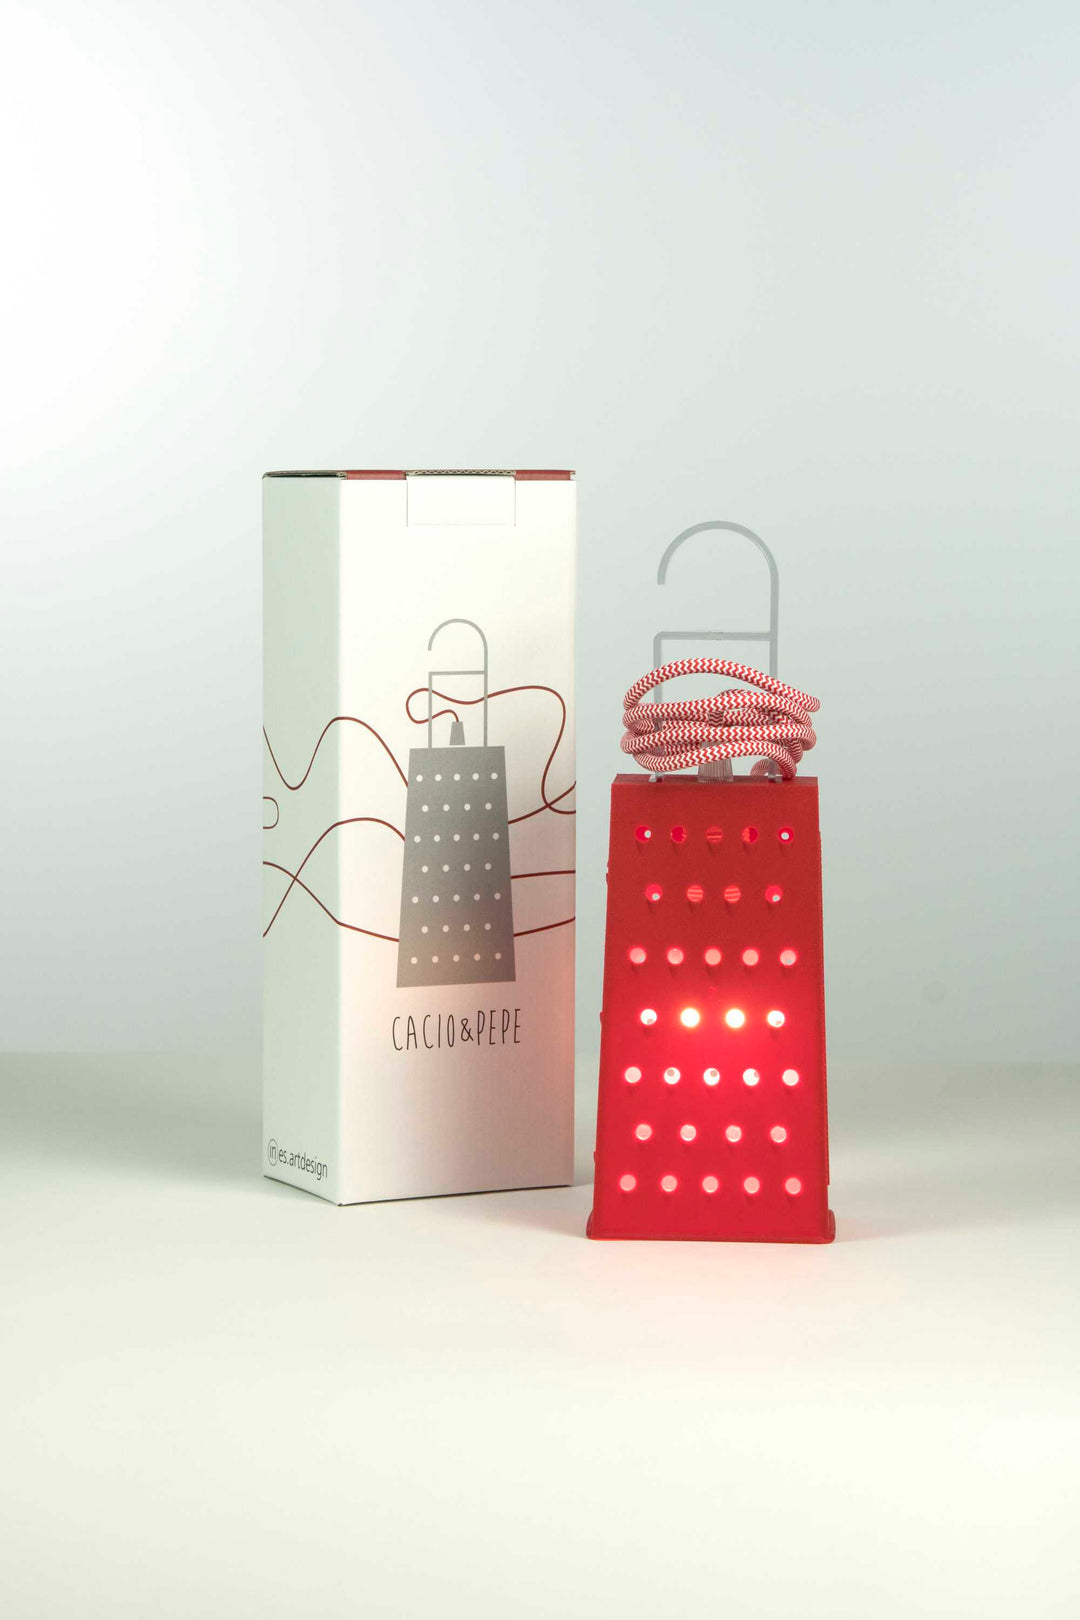 Lampa in forma de razator Cacio&pepe by In-Es.Artdesign